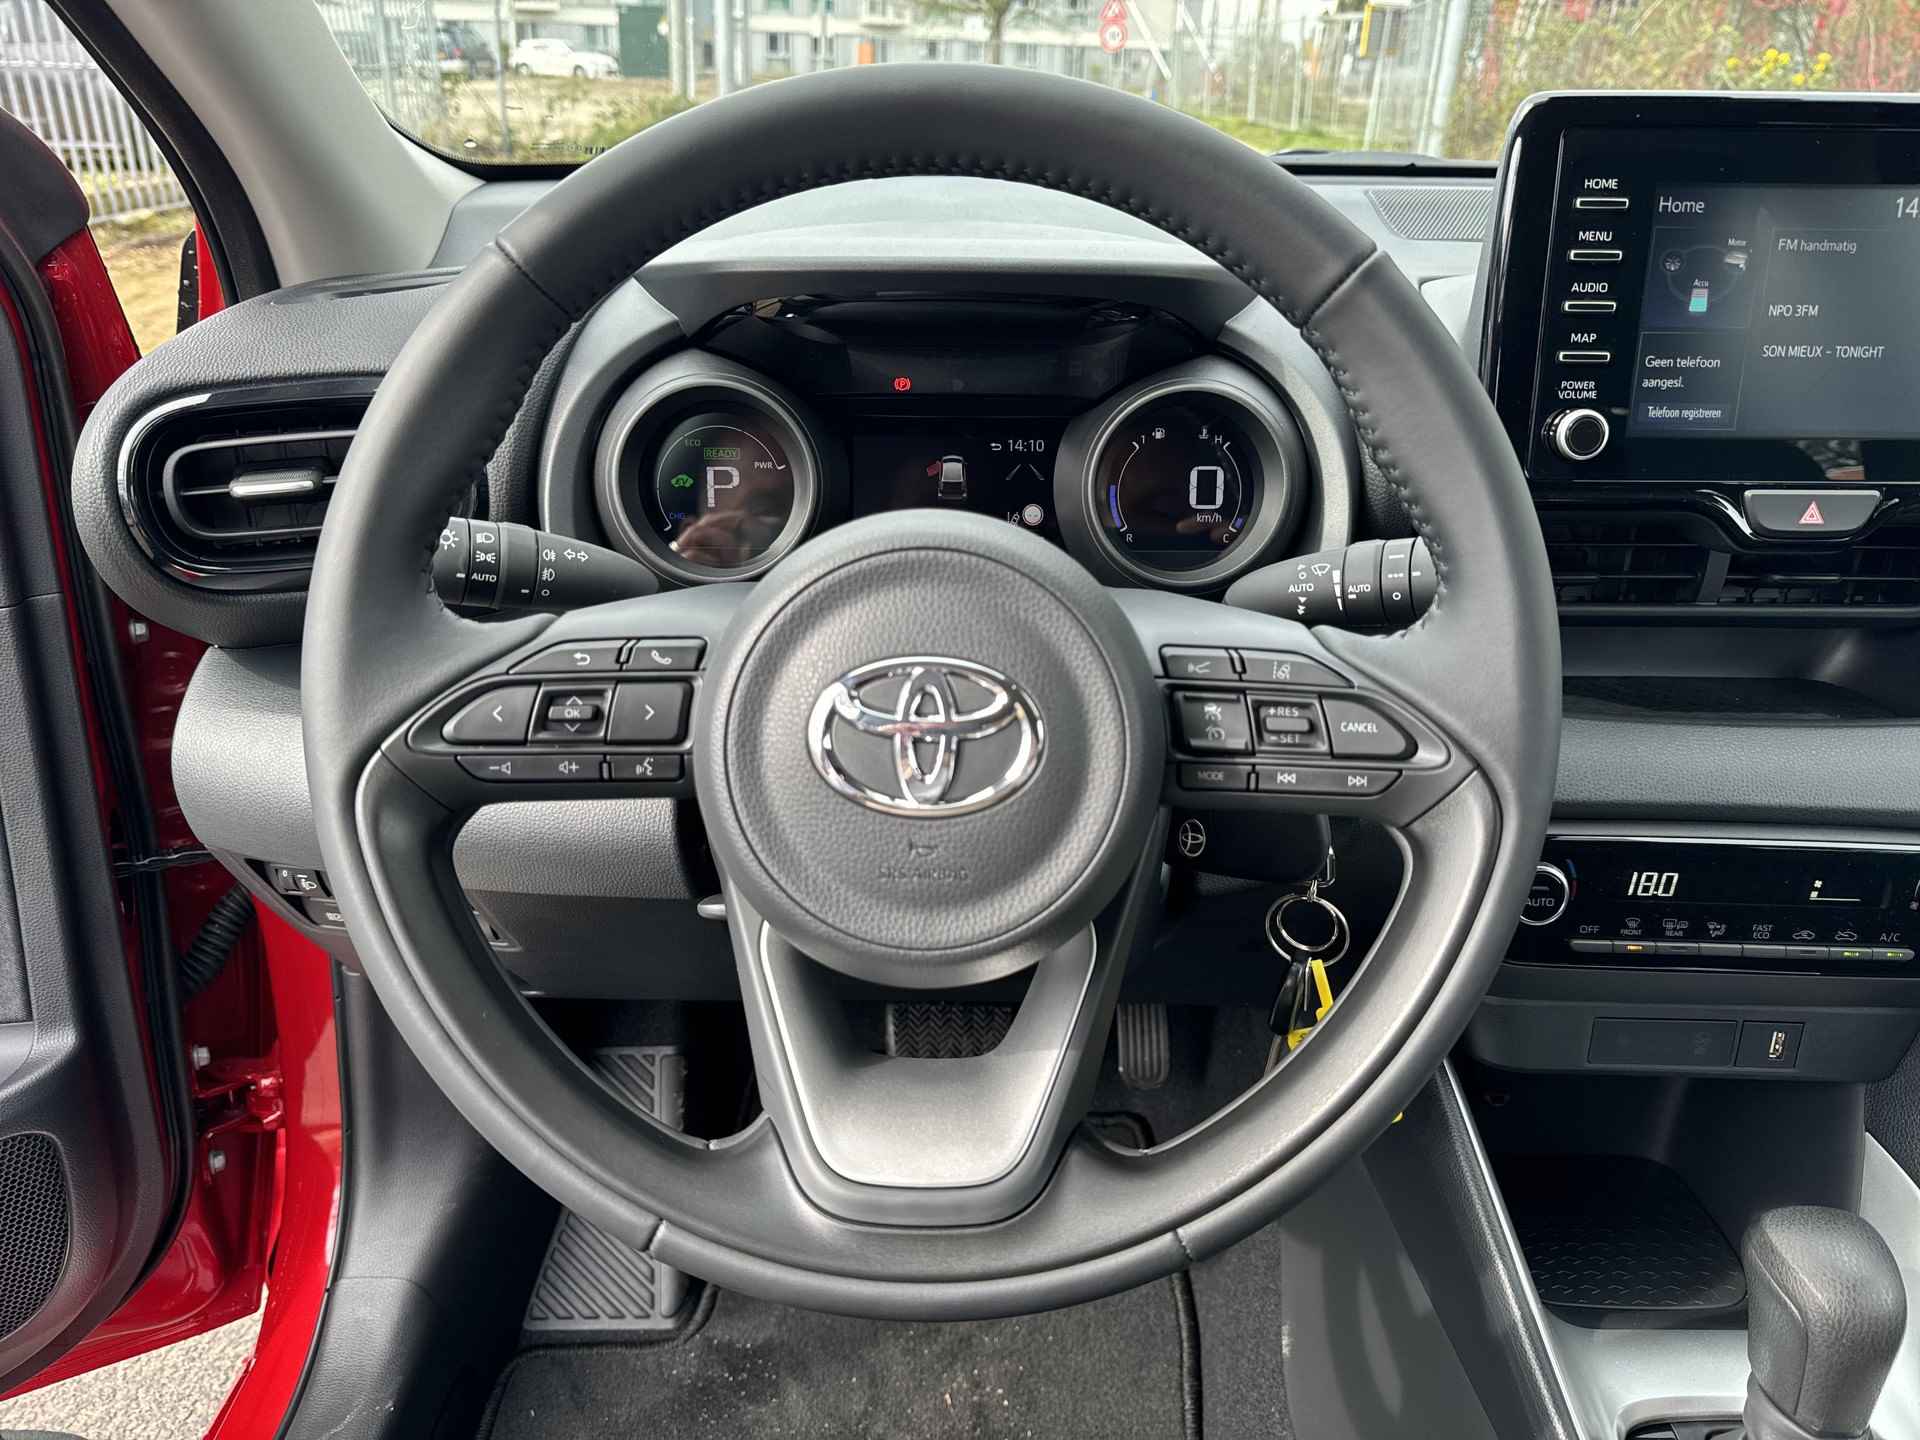 Toyota Yaris 1.5 Hybrid Team-D | 06-10141018 Voor meer informatie - 15/31